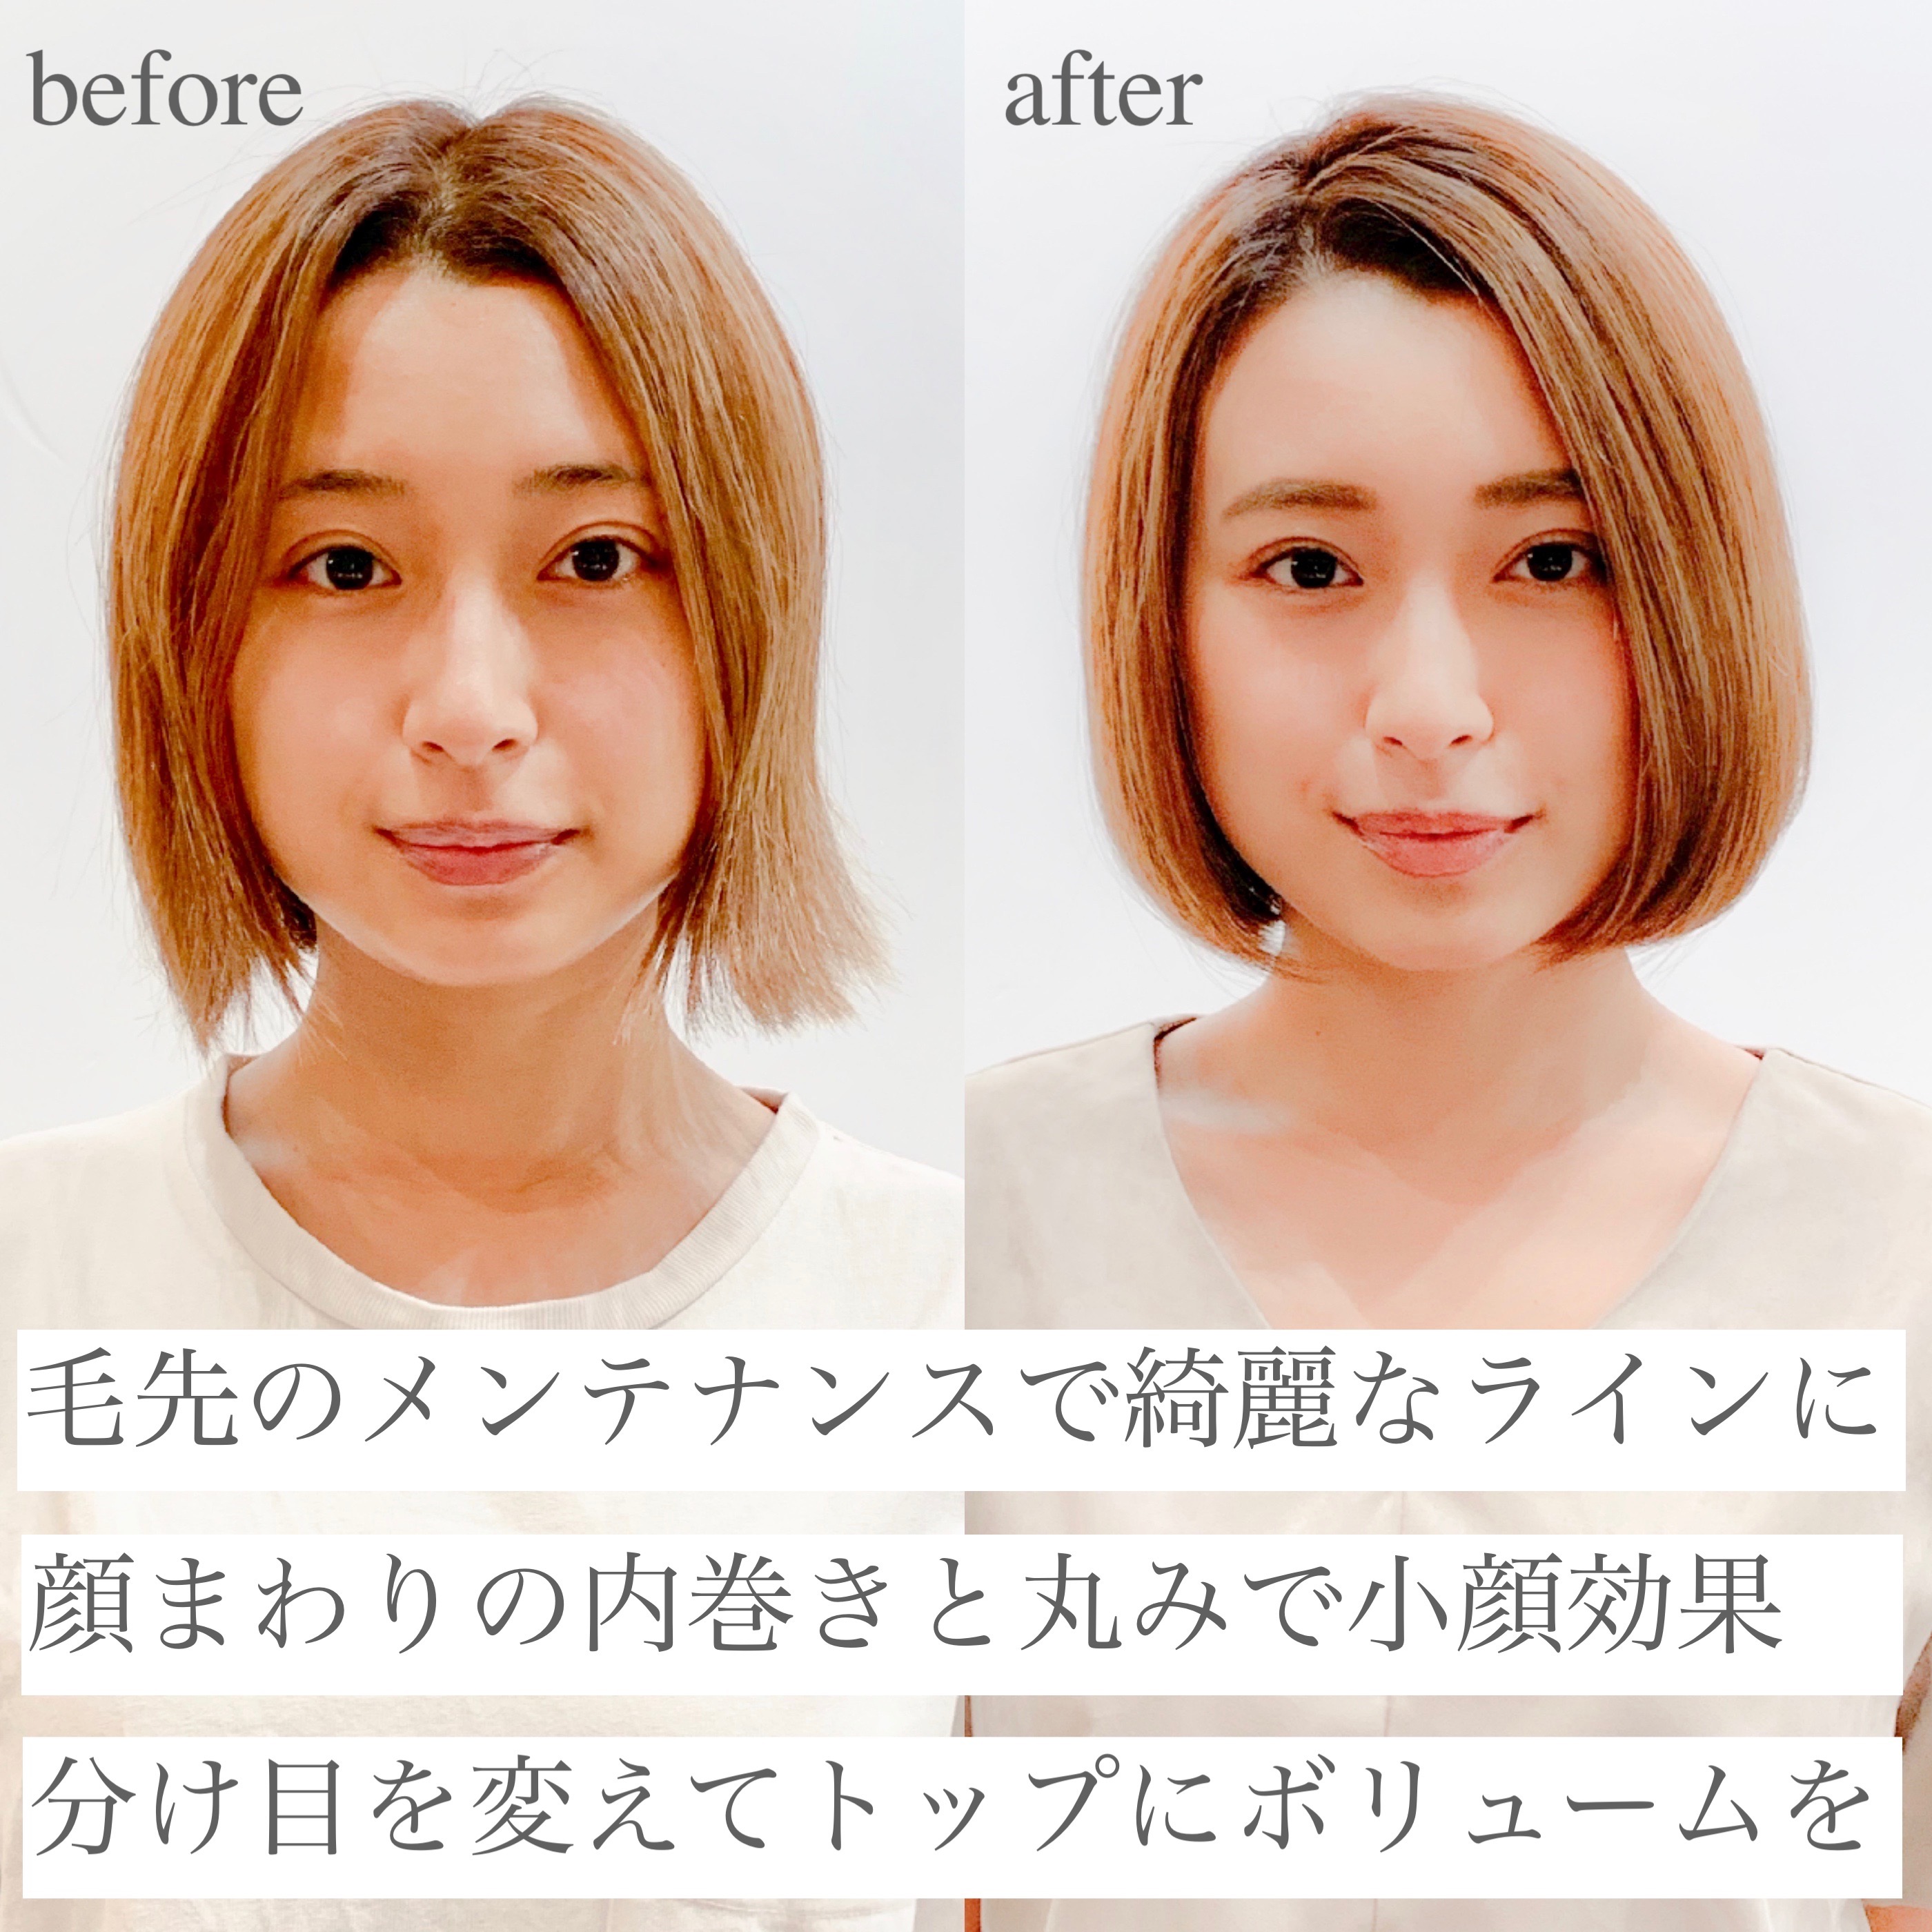 2020年秋 大人ボブを 前髪あり 前髪なし の変化で 今の自分に似合う髪型に 似合わせカットが上手い東京の美容師 美容室minx銀座 蛭田のブログ